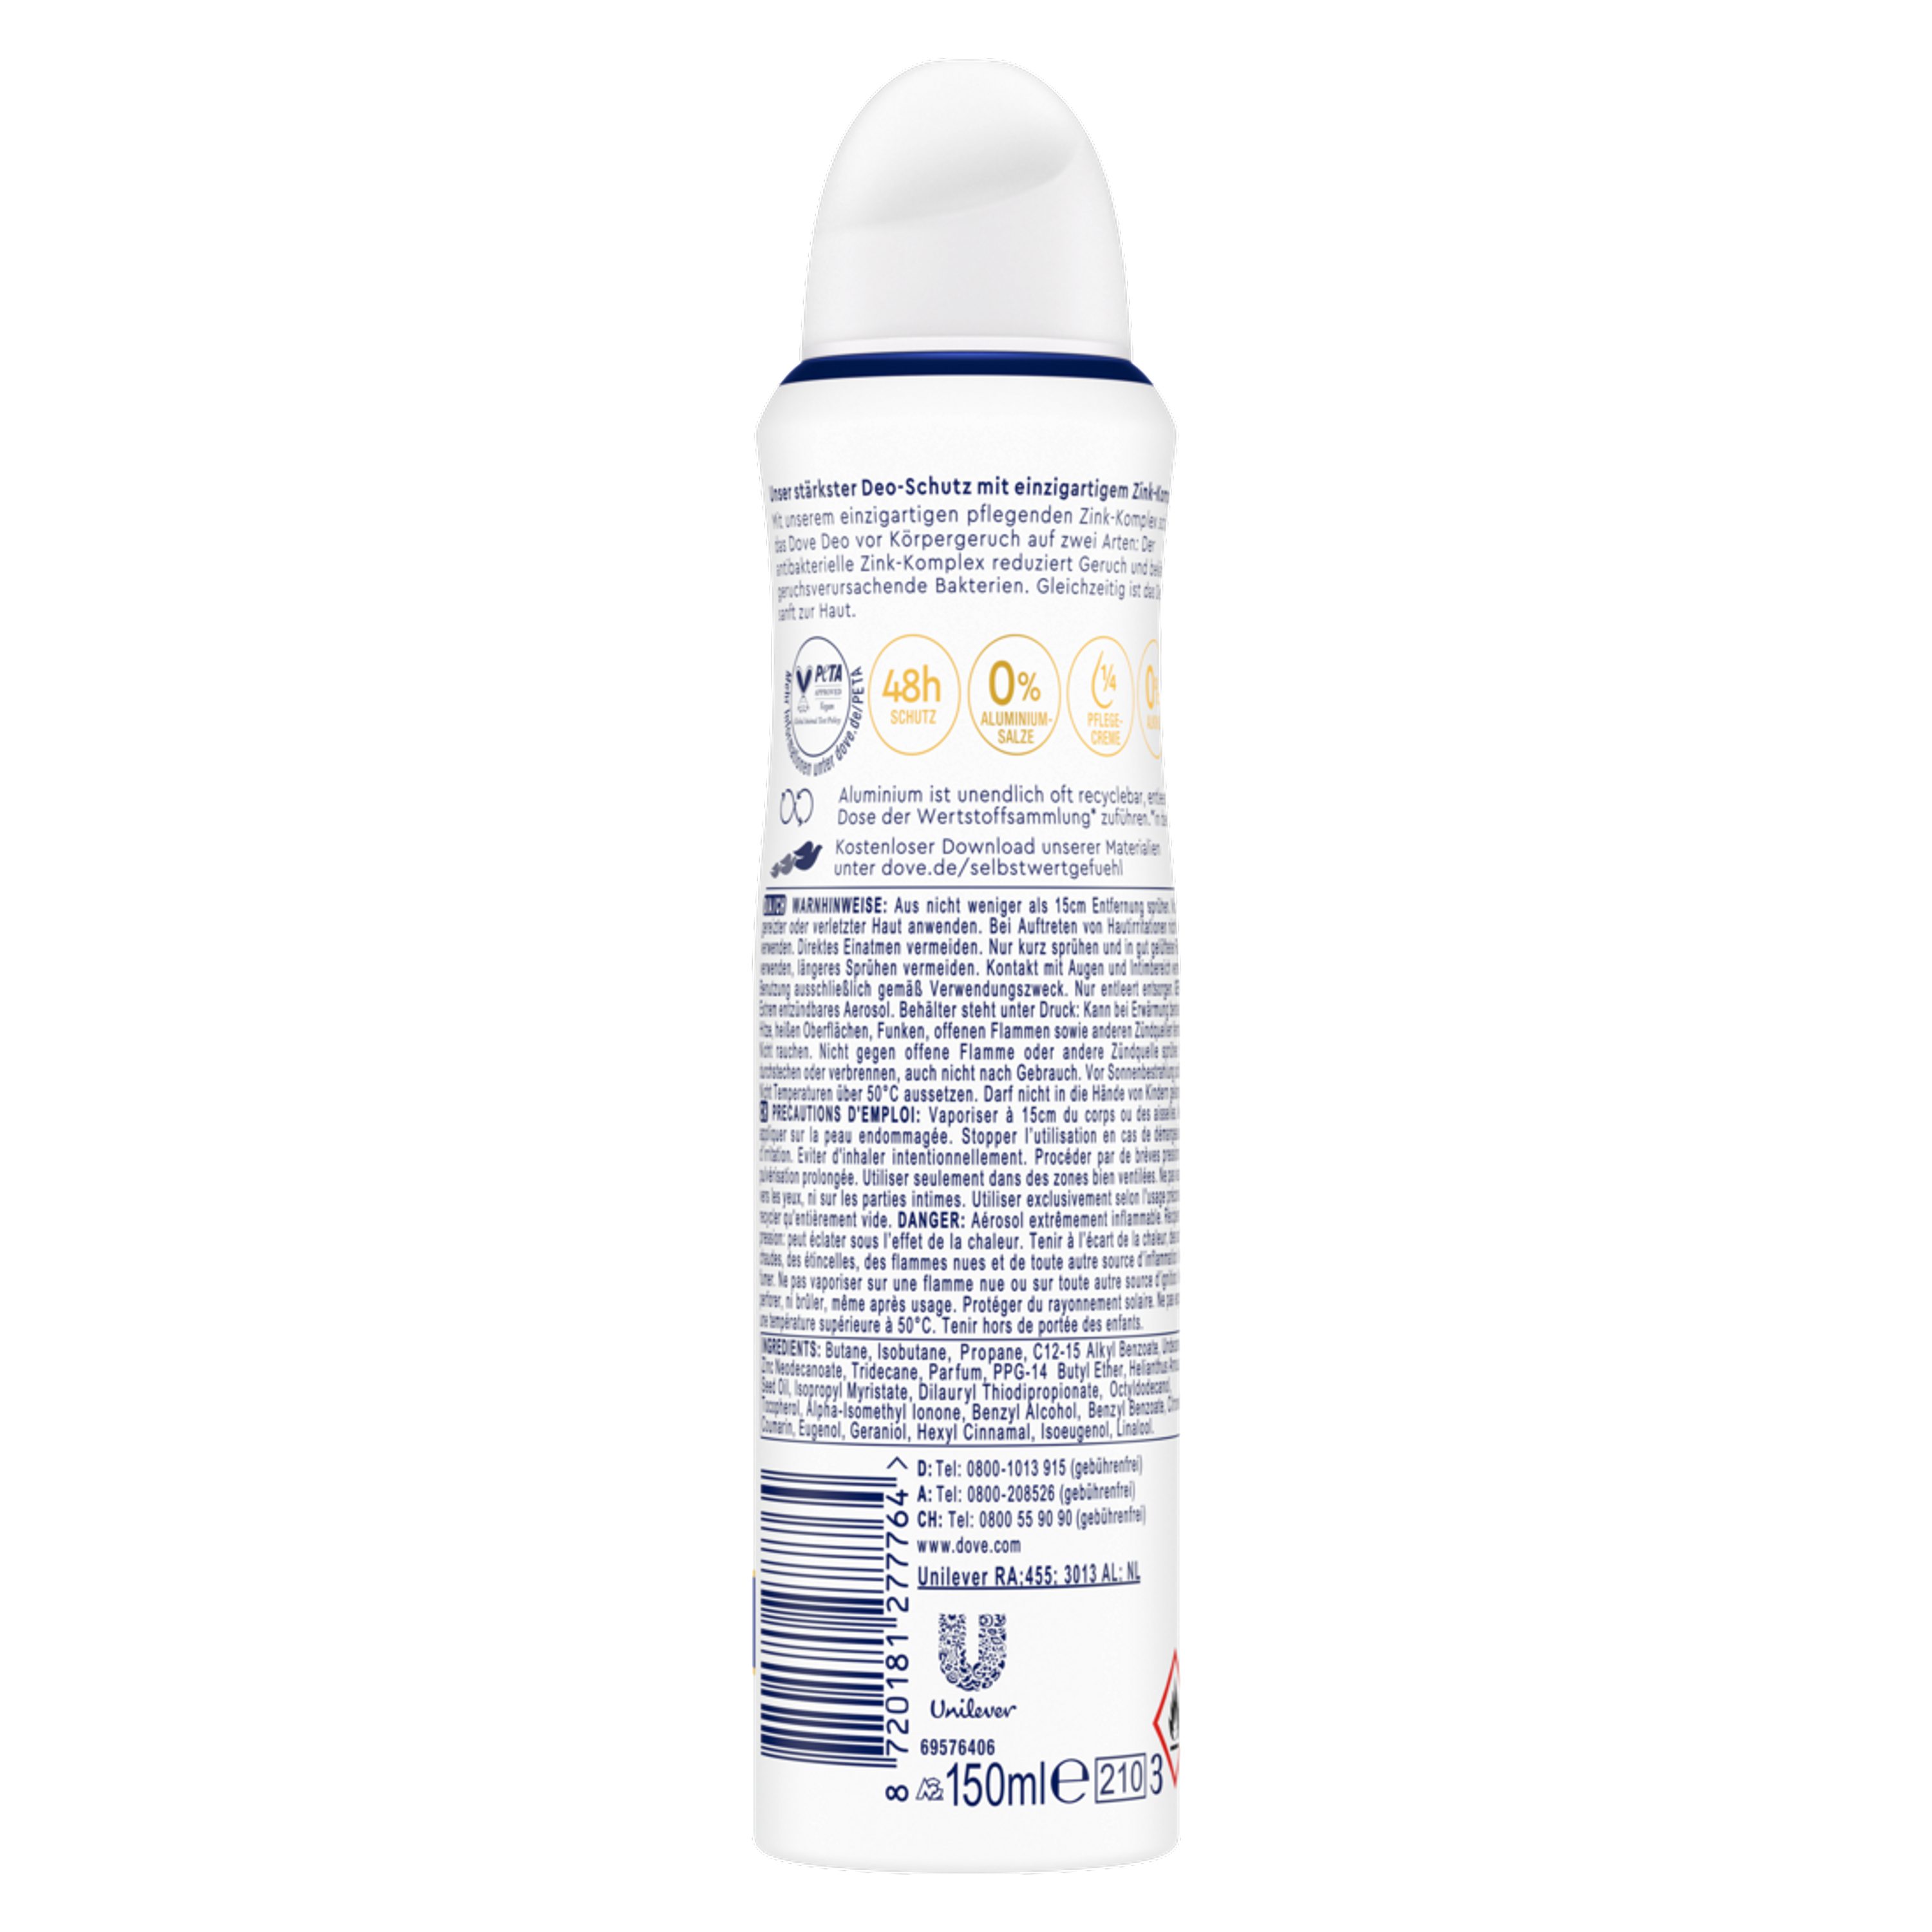 DOVE Deo-Set Deodorant-Spray mit pflegendem 6x Deo Zink-Komplex 150ml Original